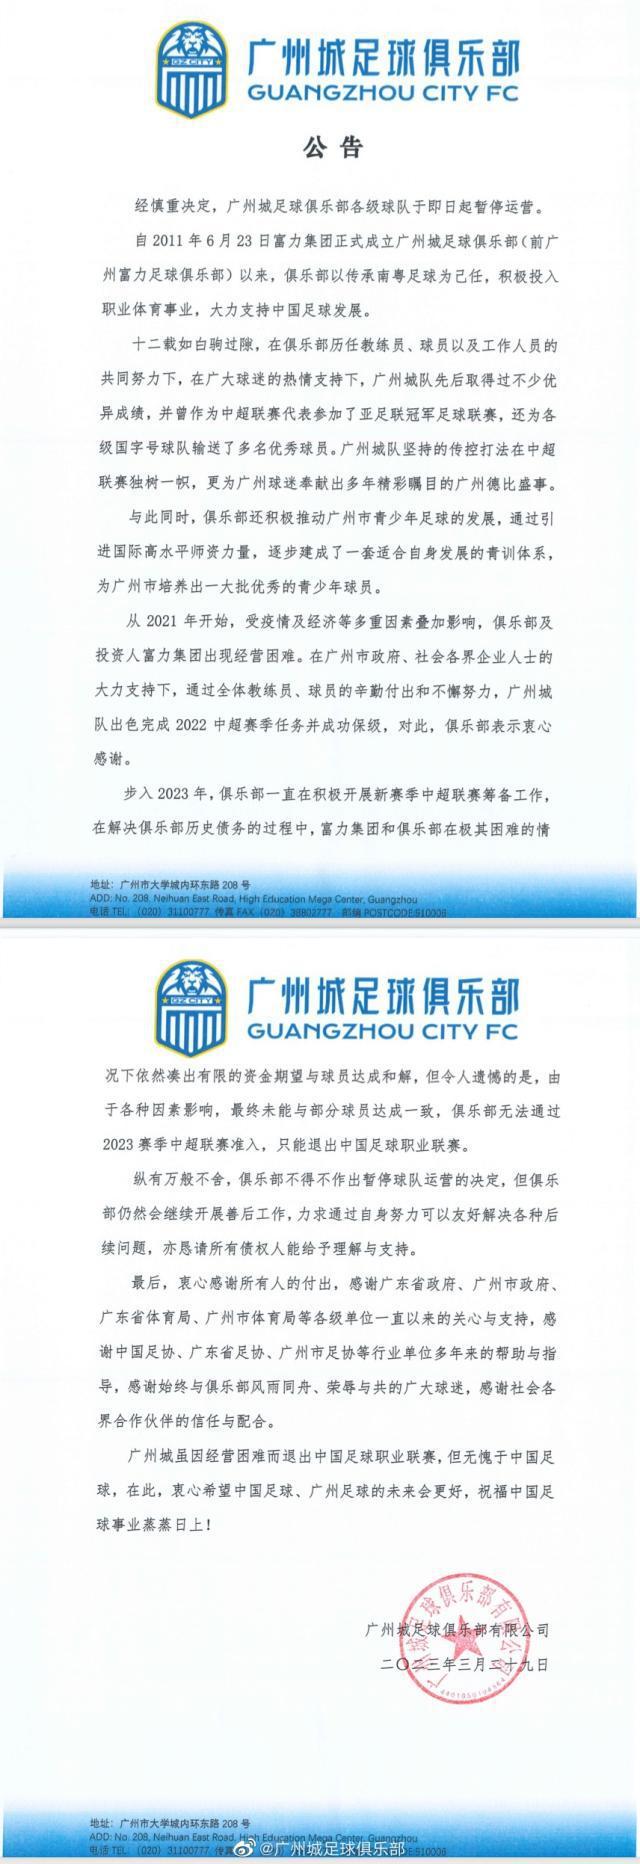 官方：广州城俱乐部暂停运营 退出职业联赛